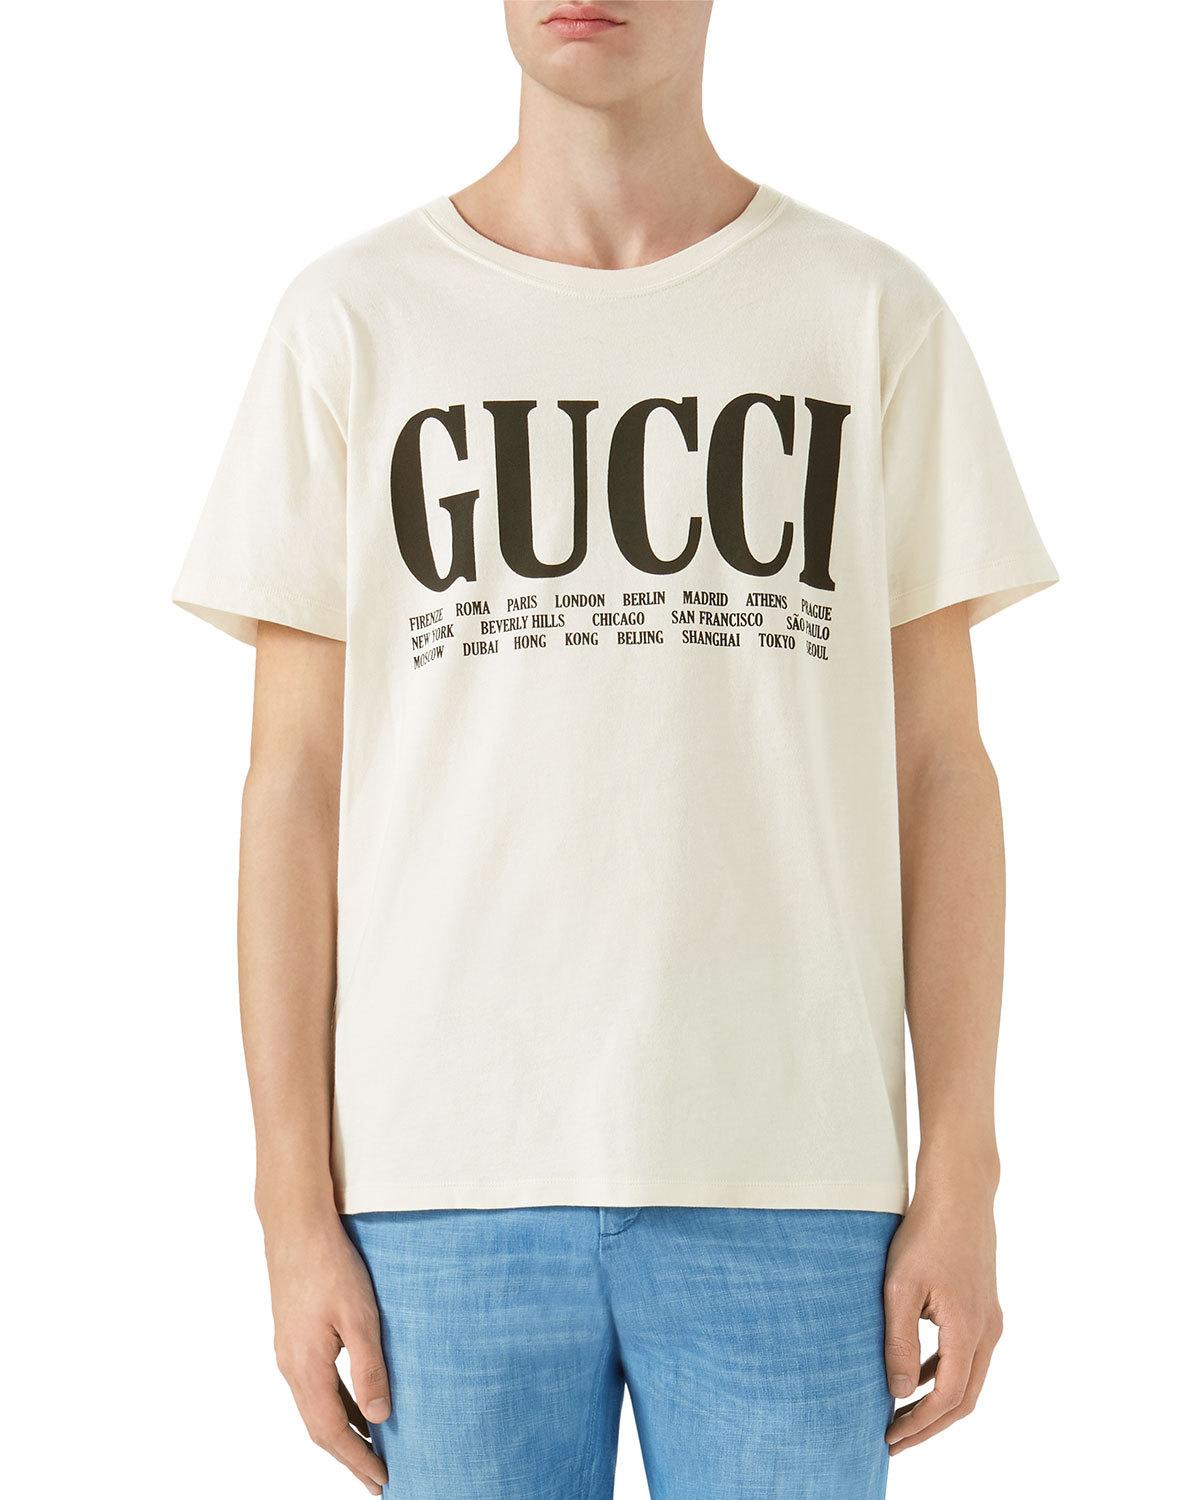 Big Gucci Logo - Gucci Big Vintage Logo T Shirt